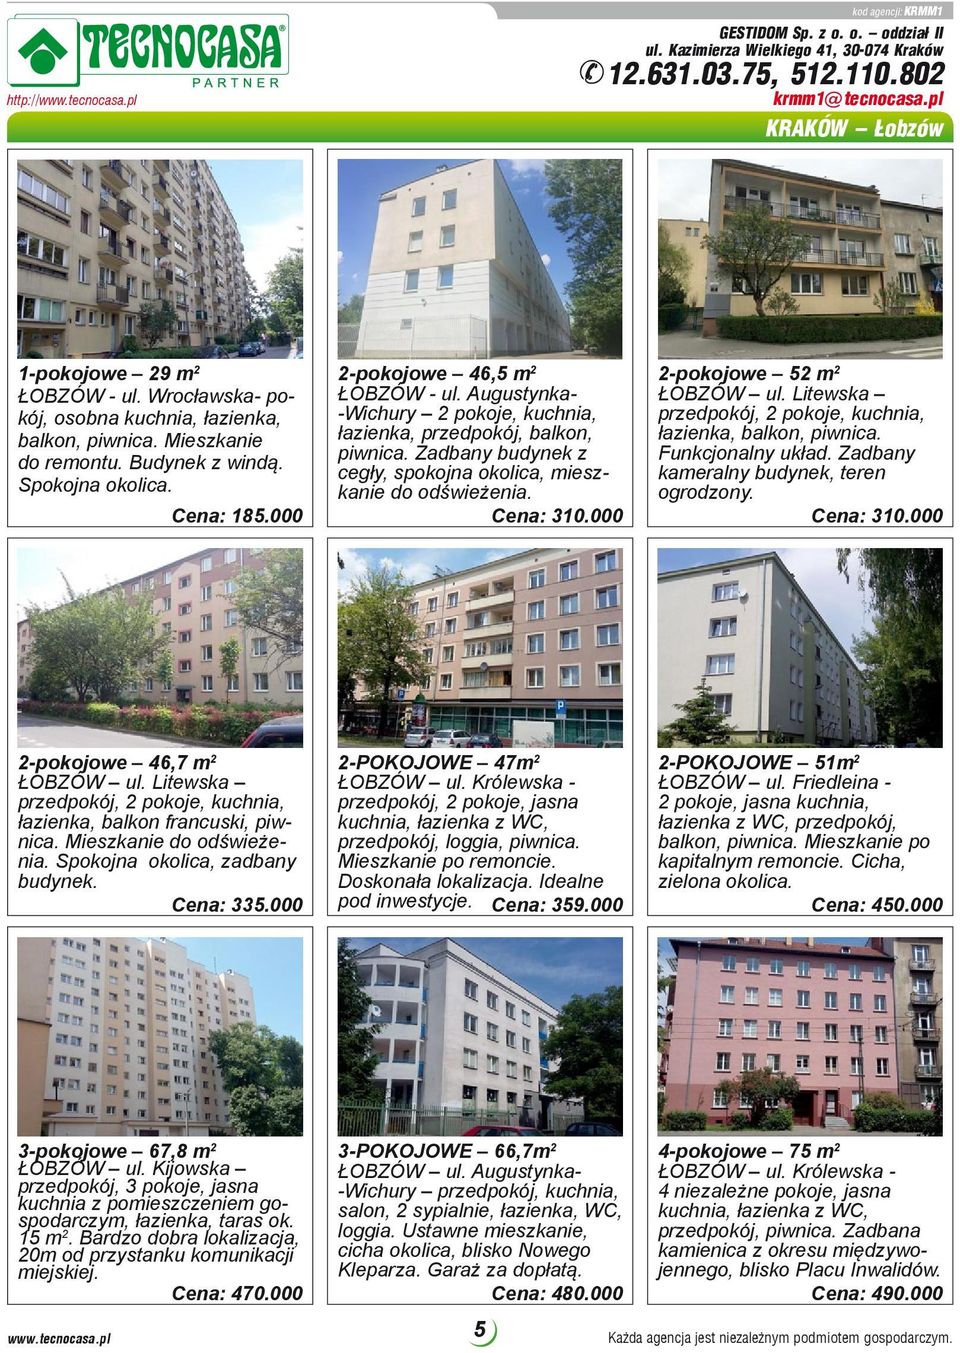 Augustynka- -Wichury 2 pokoje, kuchnia, łazienka, przedpokój, balkon, piwnica. Zadbany budynek z cegły, spokojna okolica, mieszkanie do odświeżenia. Cena: 310.000 2-pokojowe 52 m 2 ŁOBZÓW ul.